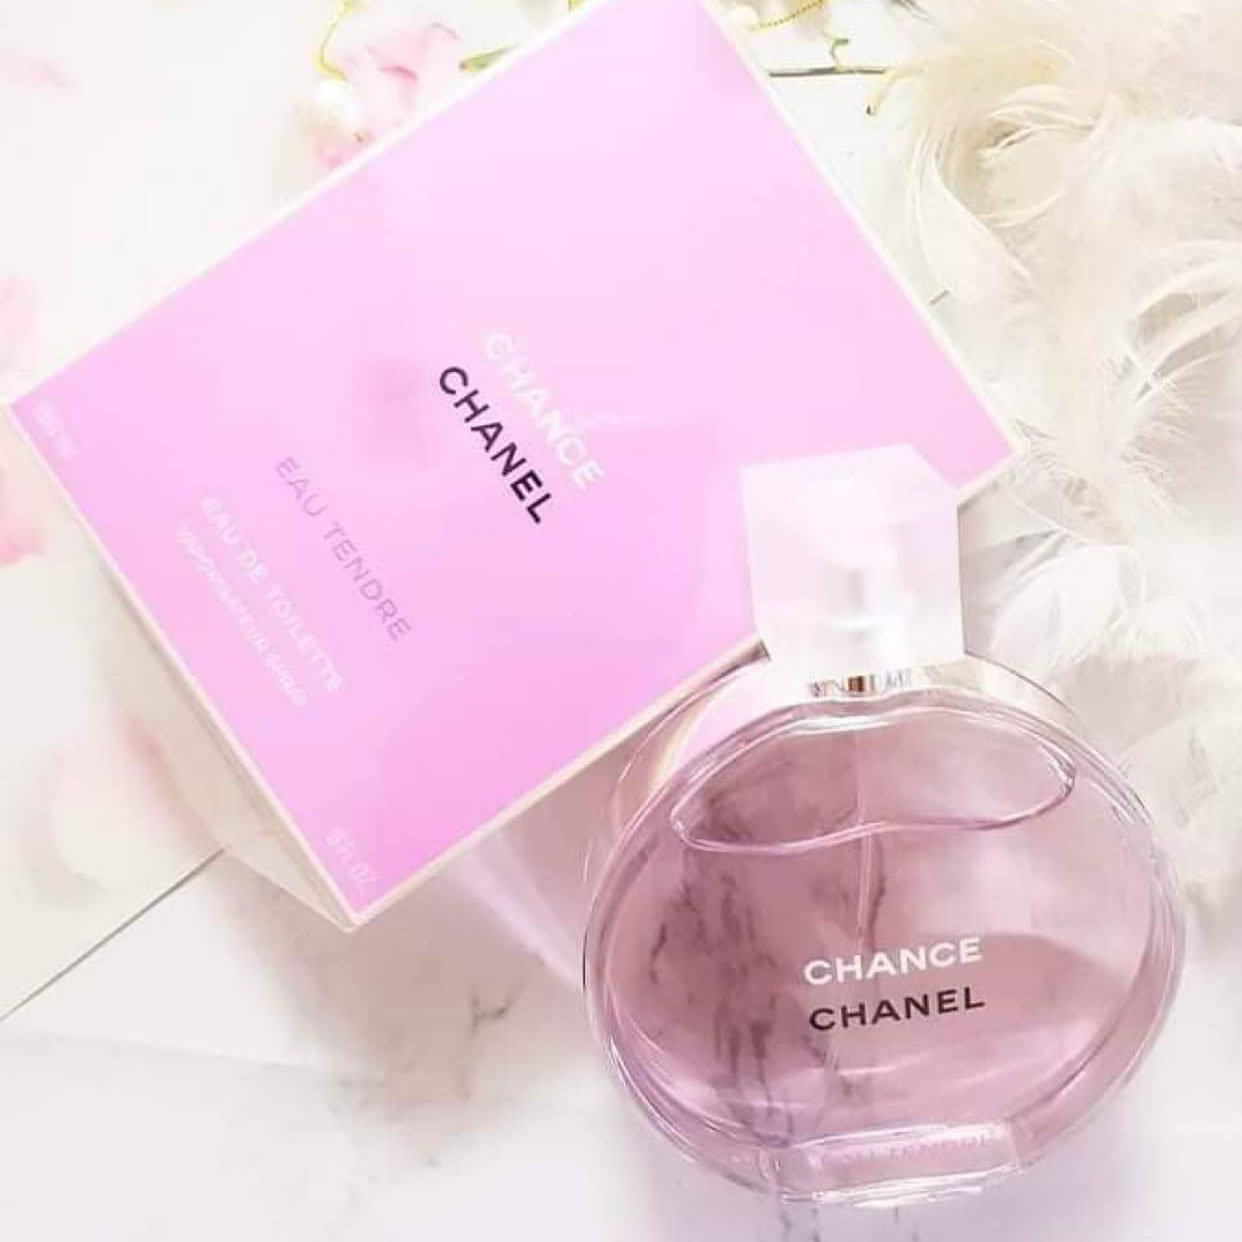 Chanel Chance Eau Tendre Màu Hồng EDT 100ml xách tay chính hãng giá rẻ bảo  hành dài - Nước hoa nữ - Genmaz